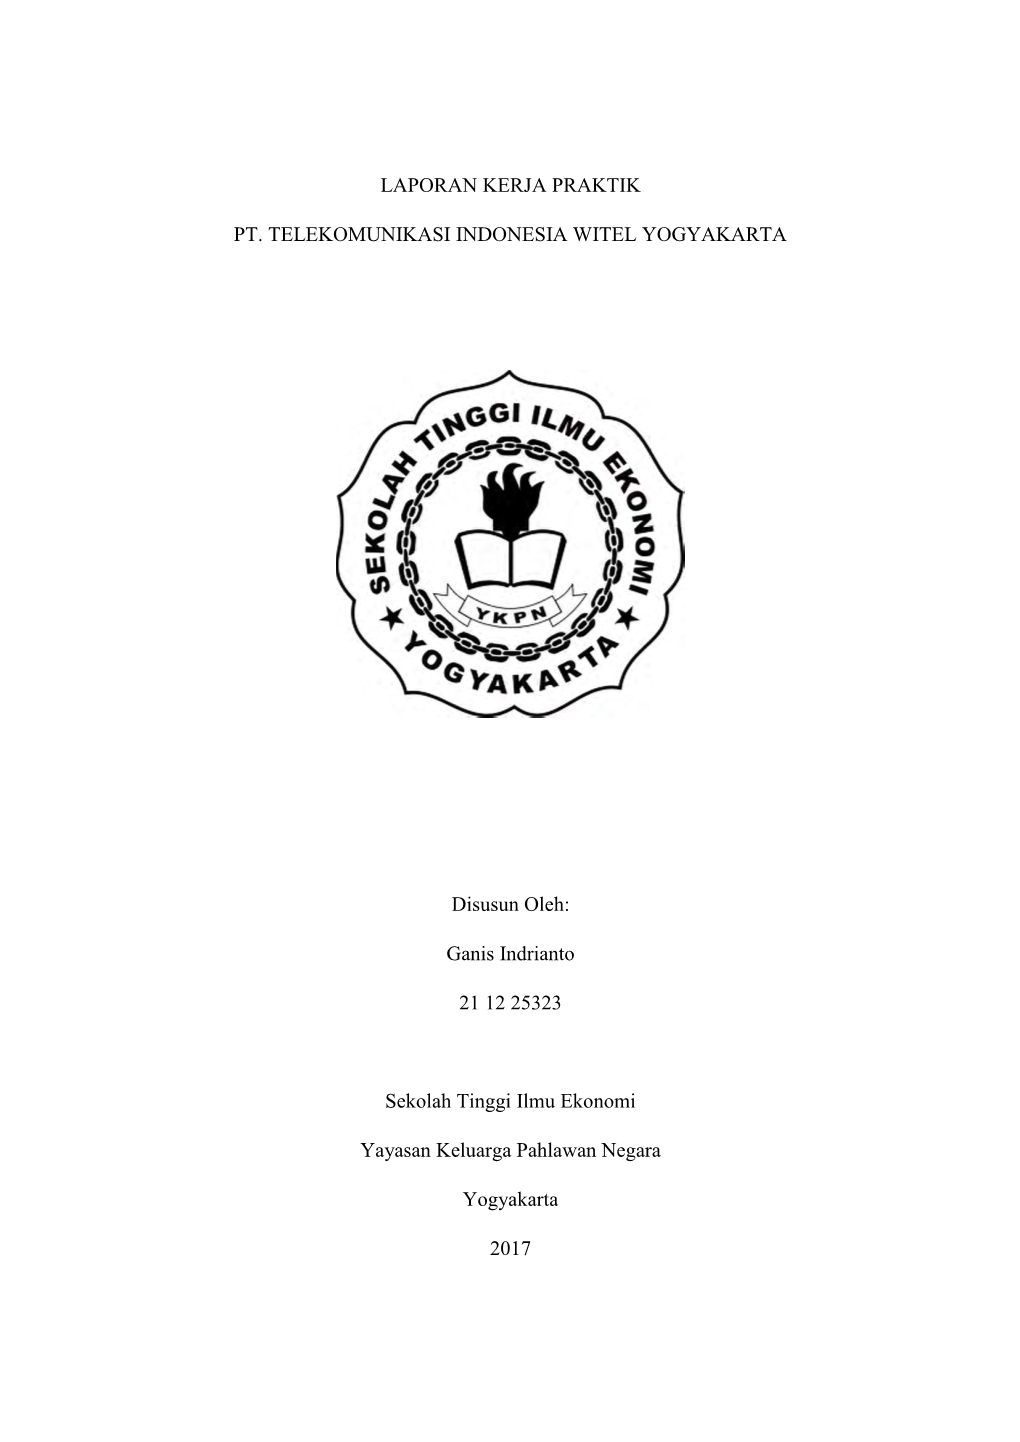 Laporan Kerja Praktik Pt. Telekomunikasi Indonesia